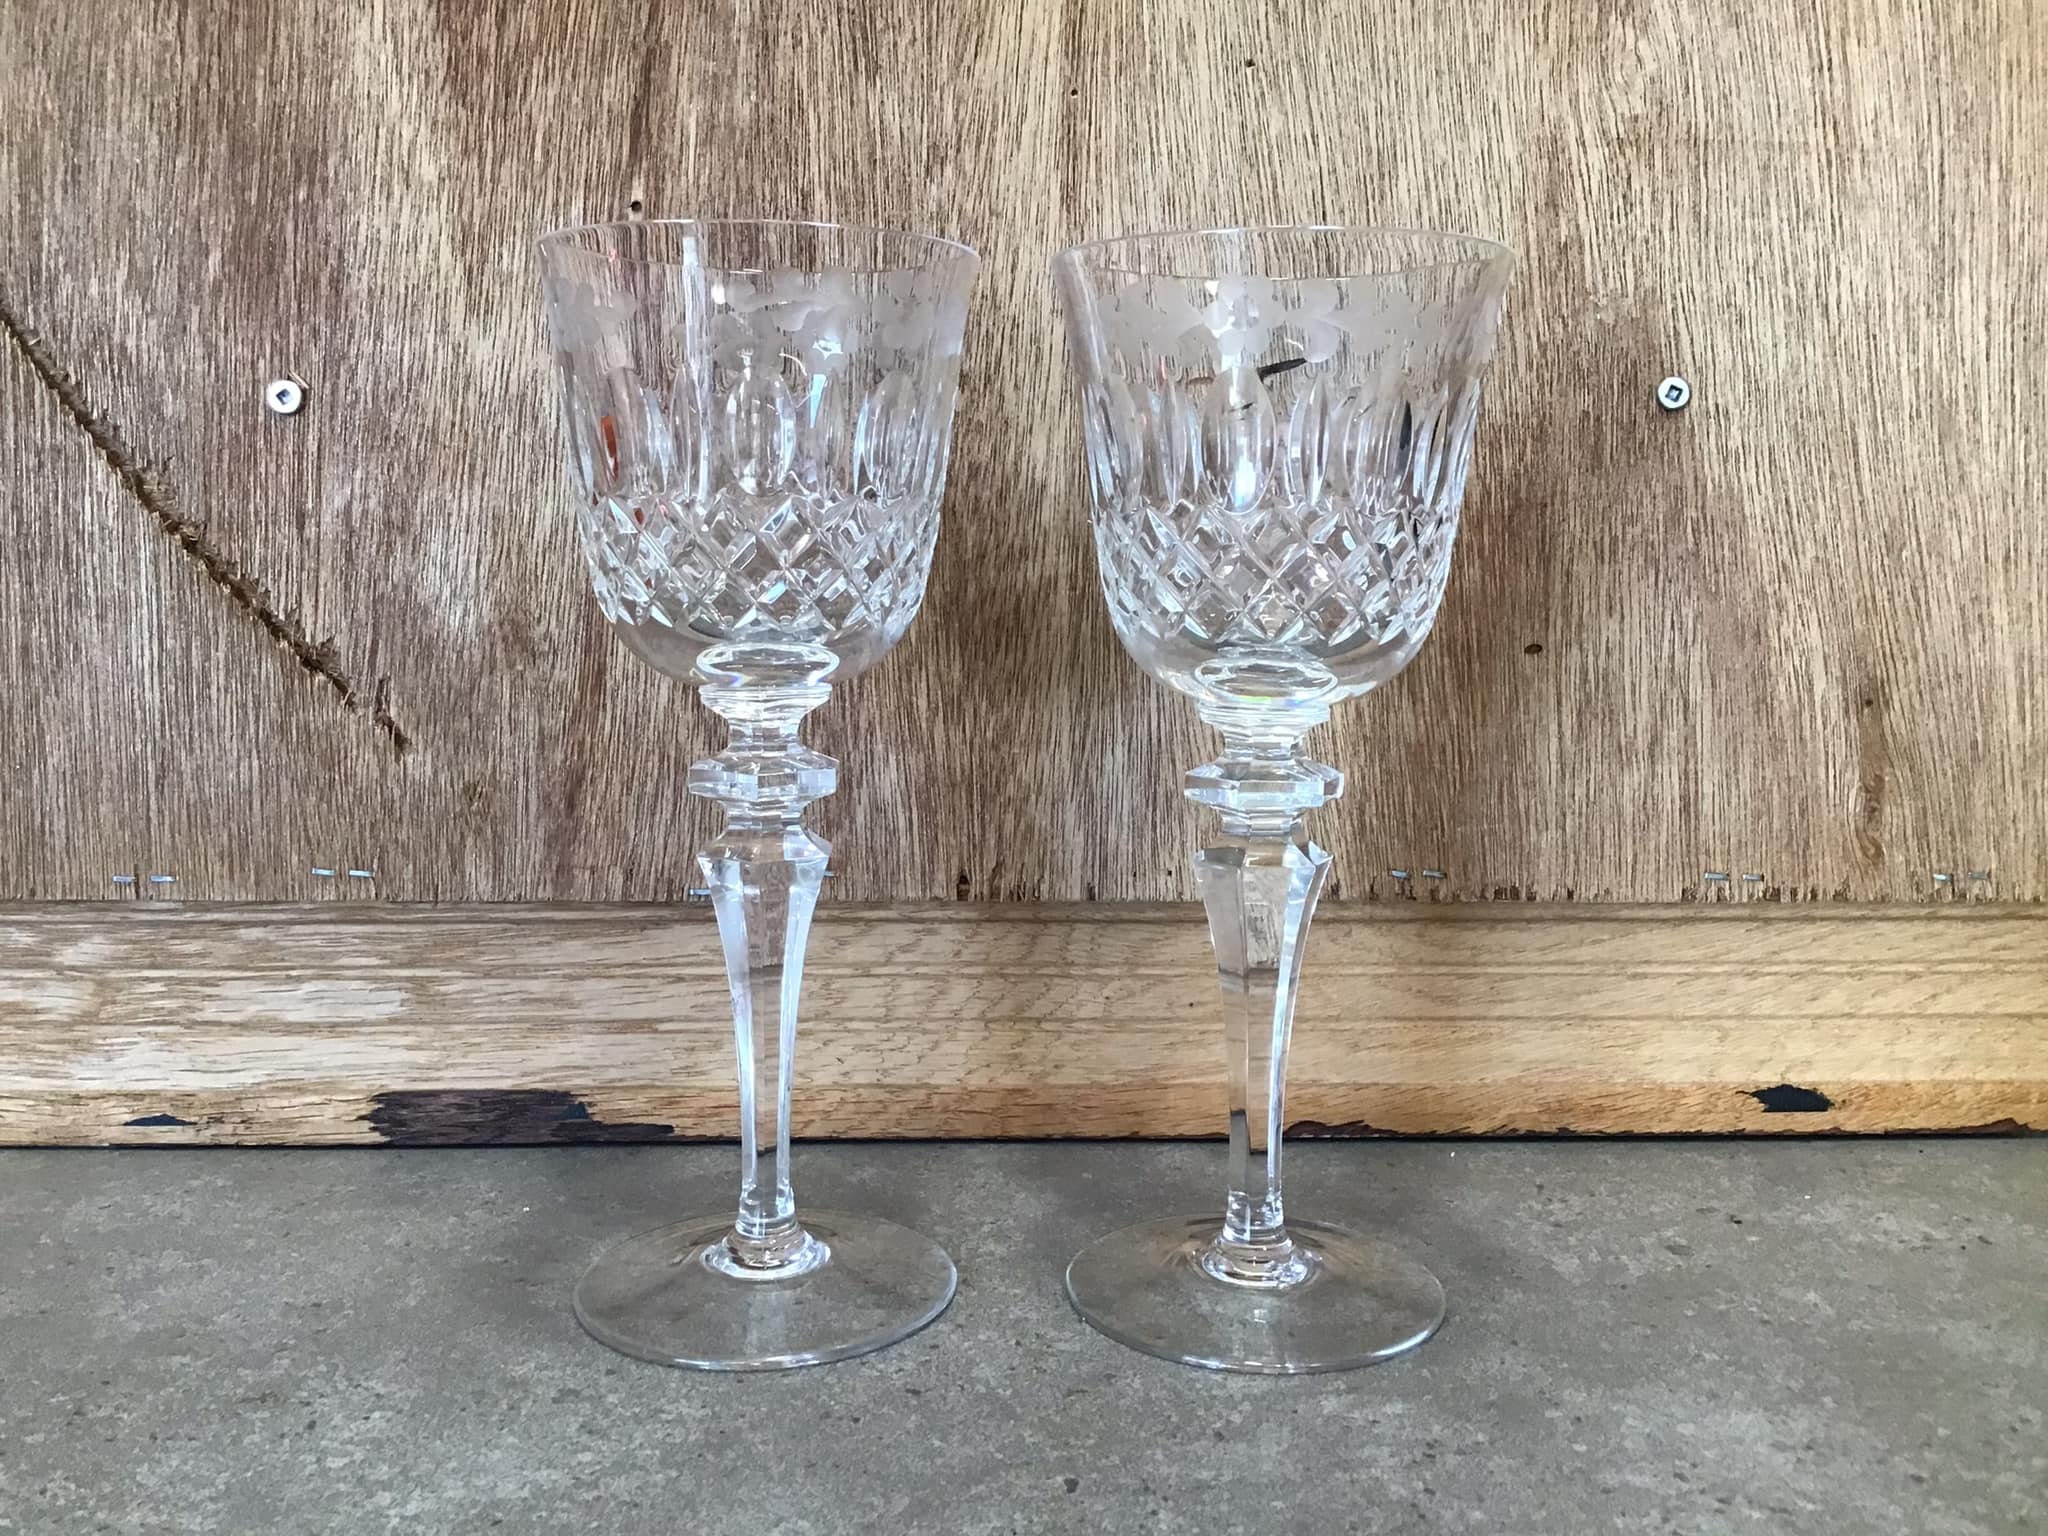 2 Antique or Vintage Etched Wine Glasses Set, Crystal Goblets